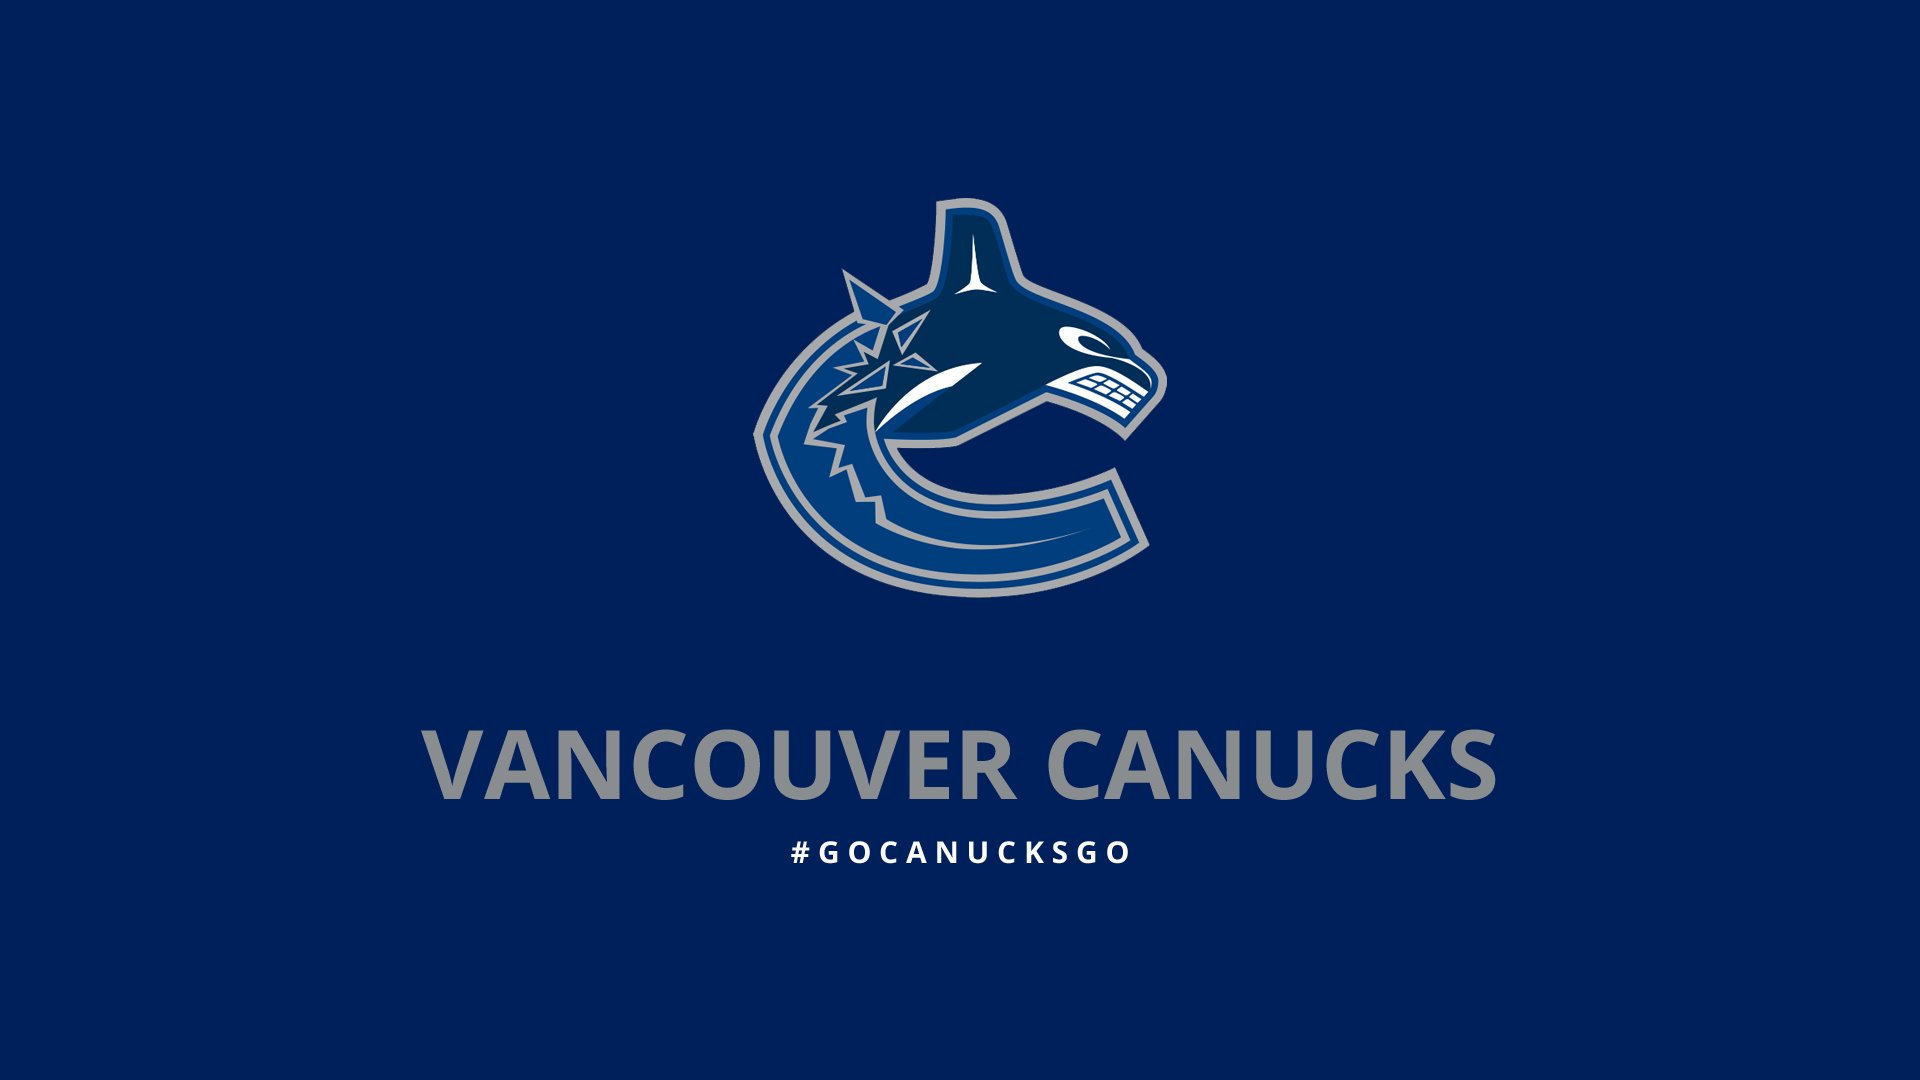 Vancouver Canucks 001 NHL, Hokej, Logo